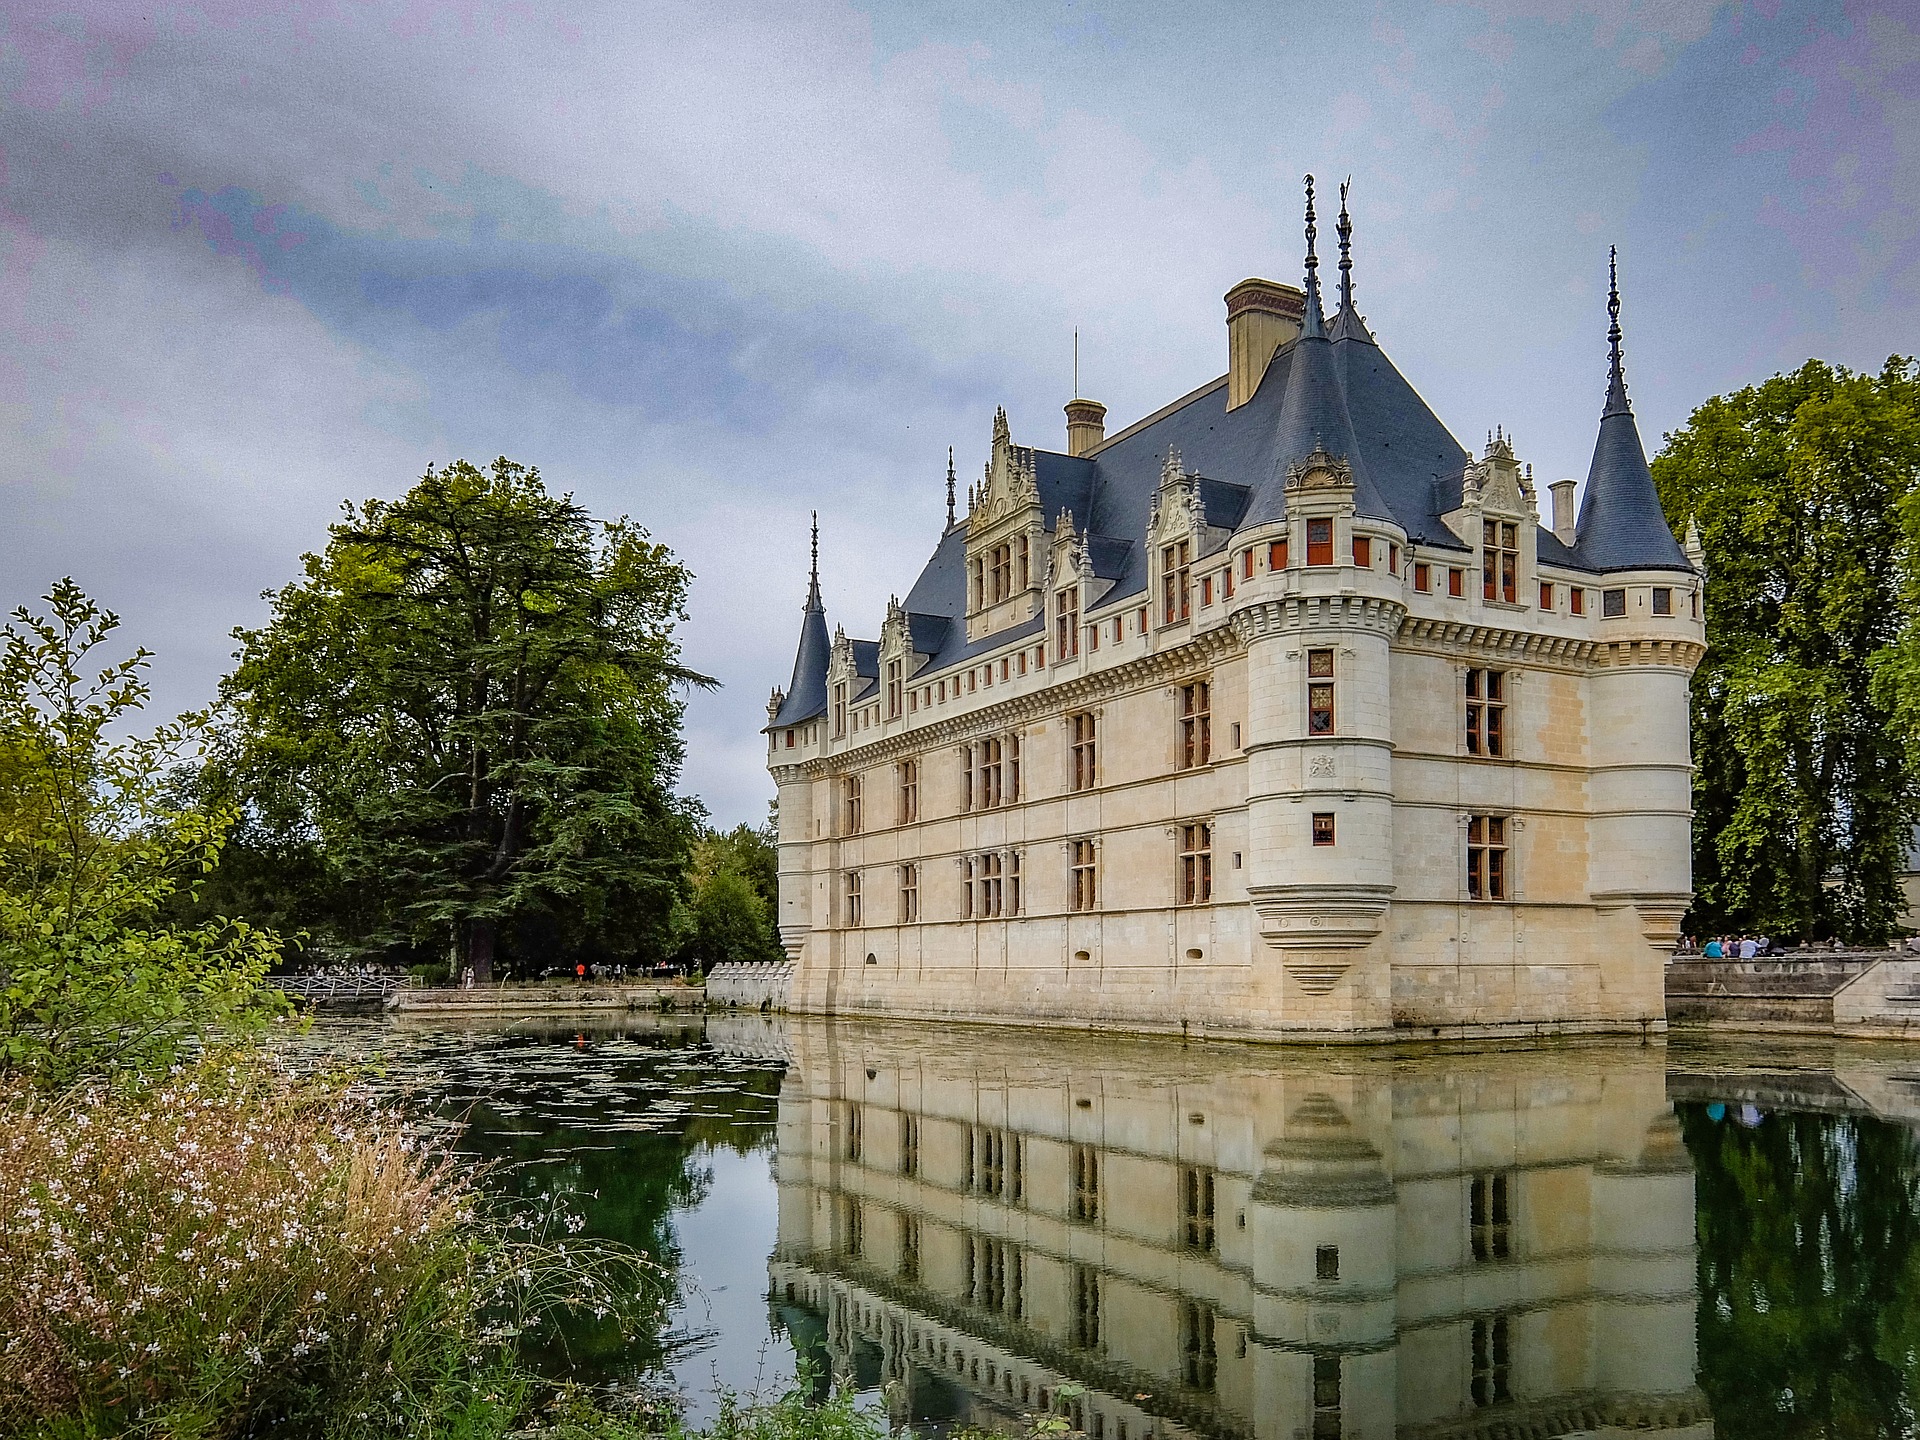 Guide to Chateau d’ Azay-le-Rideau